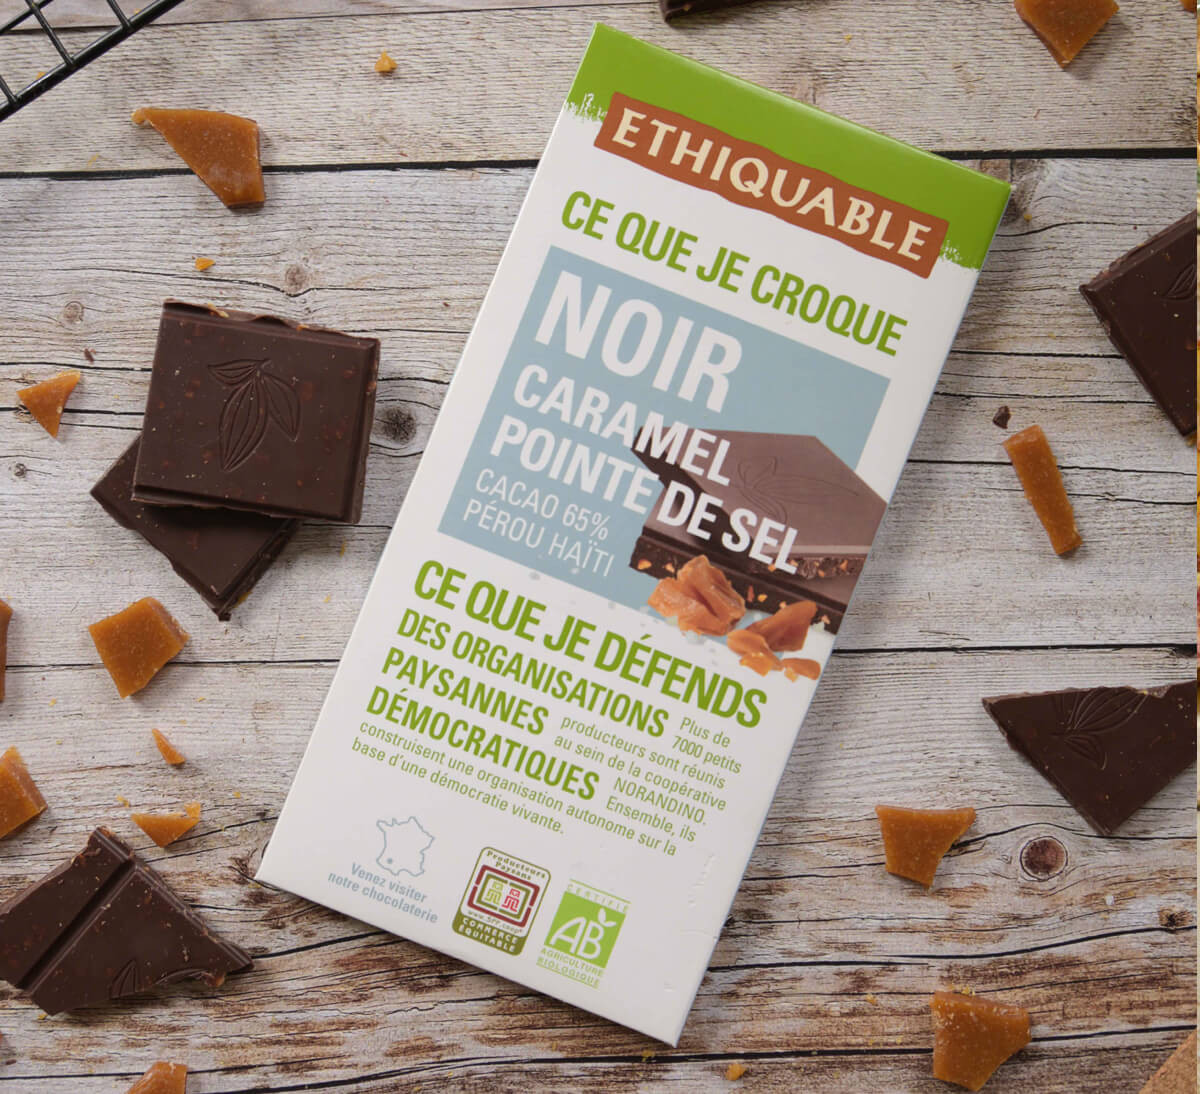 Ethiquable - Chocolat noir bio Caramel Pointe de sel issu du Commerce Equitable fabriqué dans le Gers